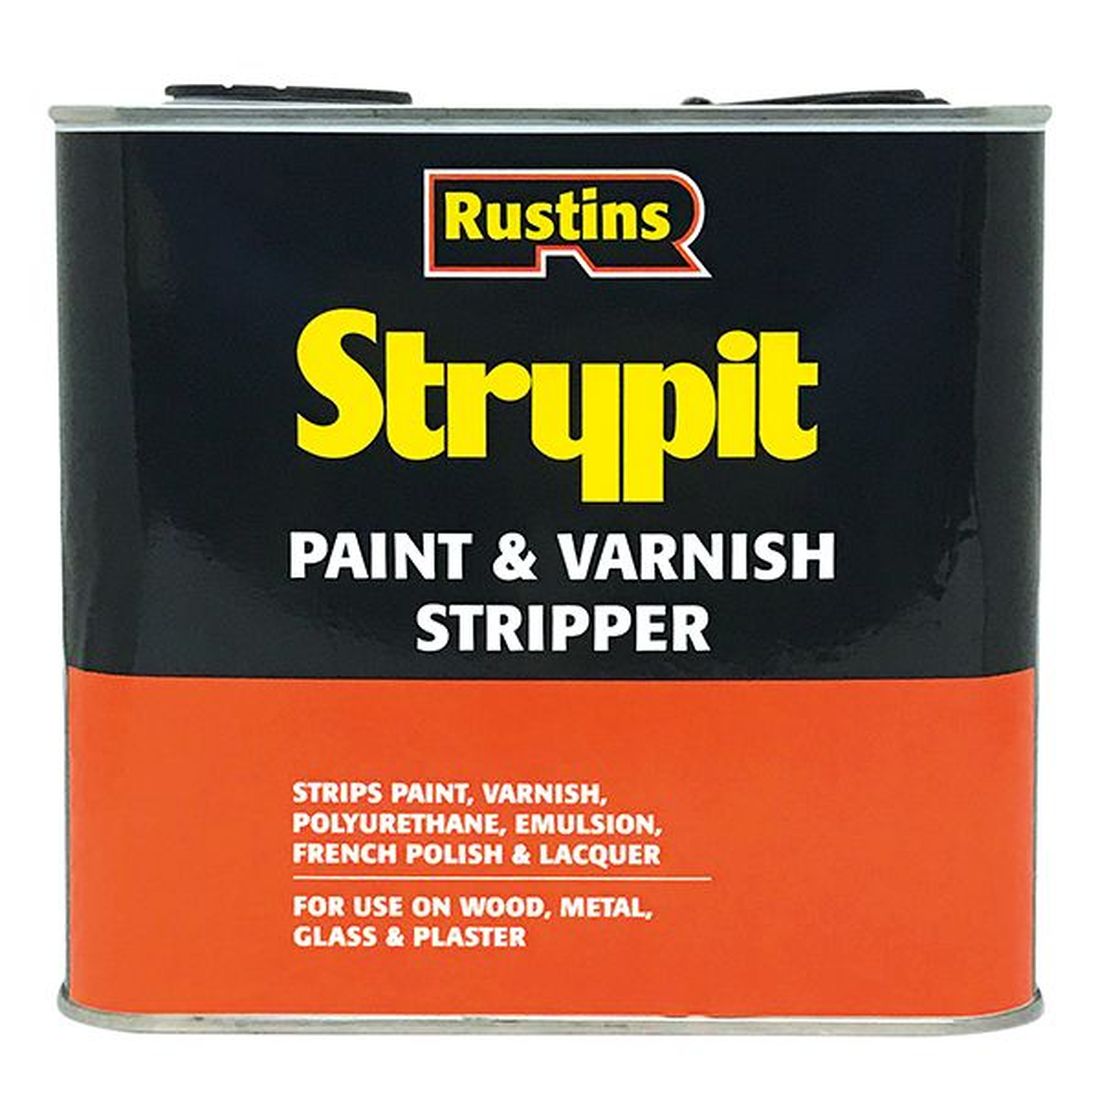 Rustins Strypit Paint & Varnish Stripper 5 litre                                        